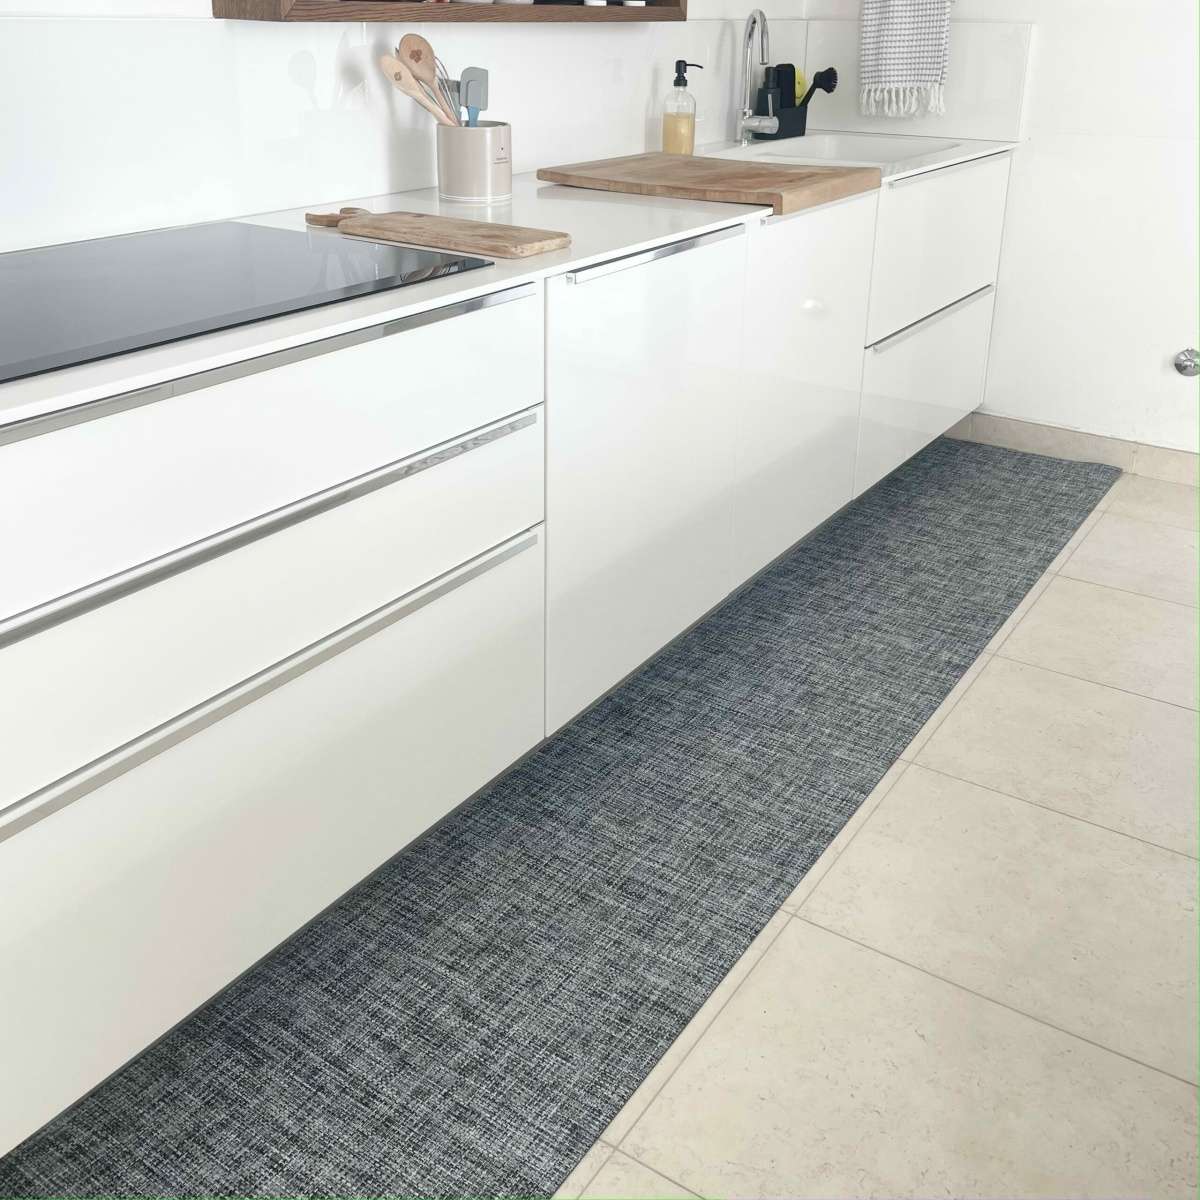 Immagine del prodotto Tappeto Cucina a metro Black and White in Pvc - scegli tu la misura | Pietro Zanetti Home